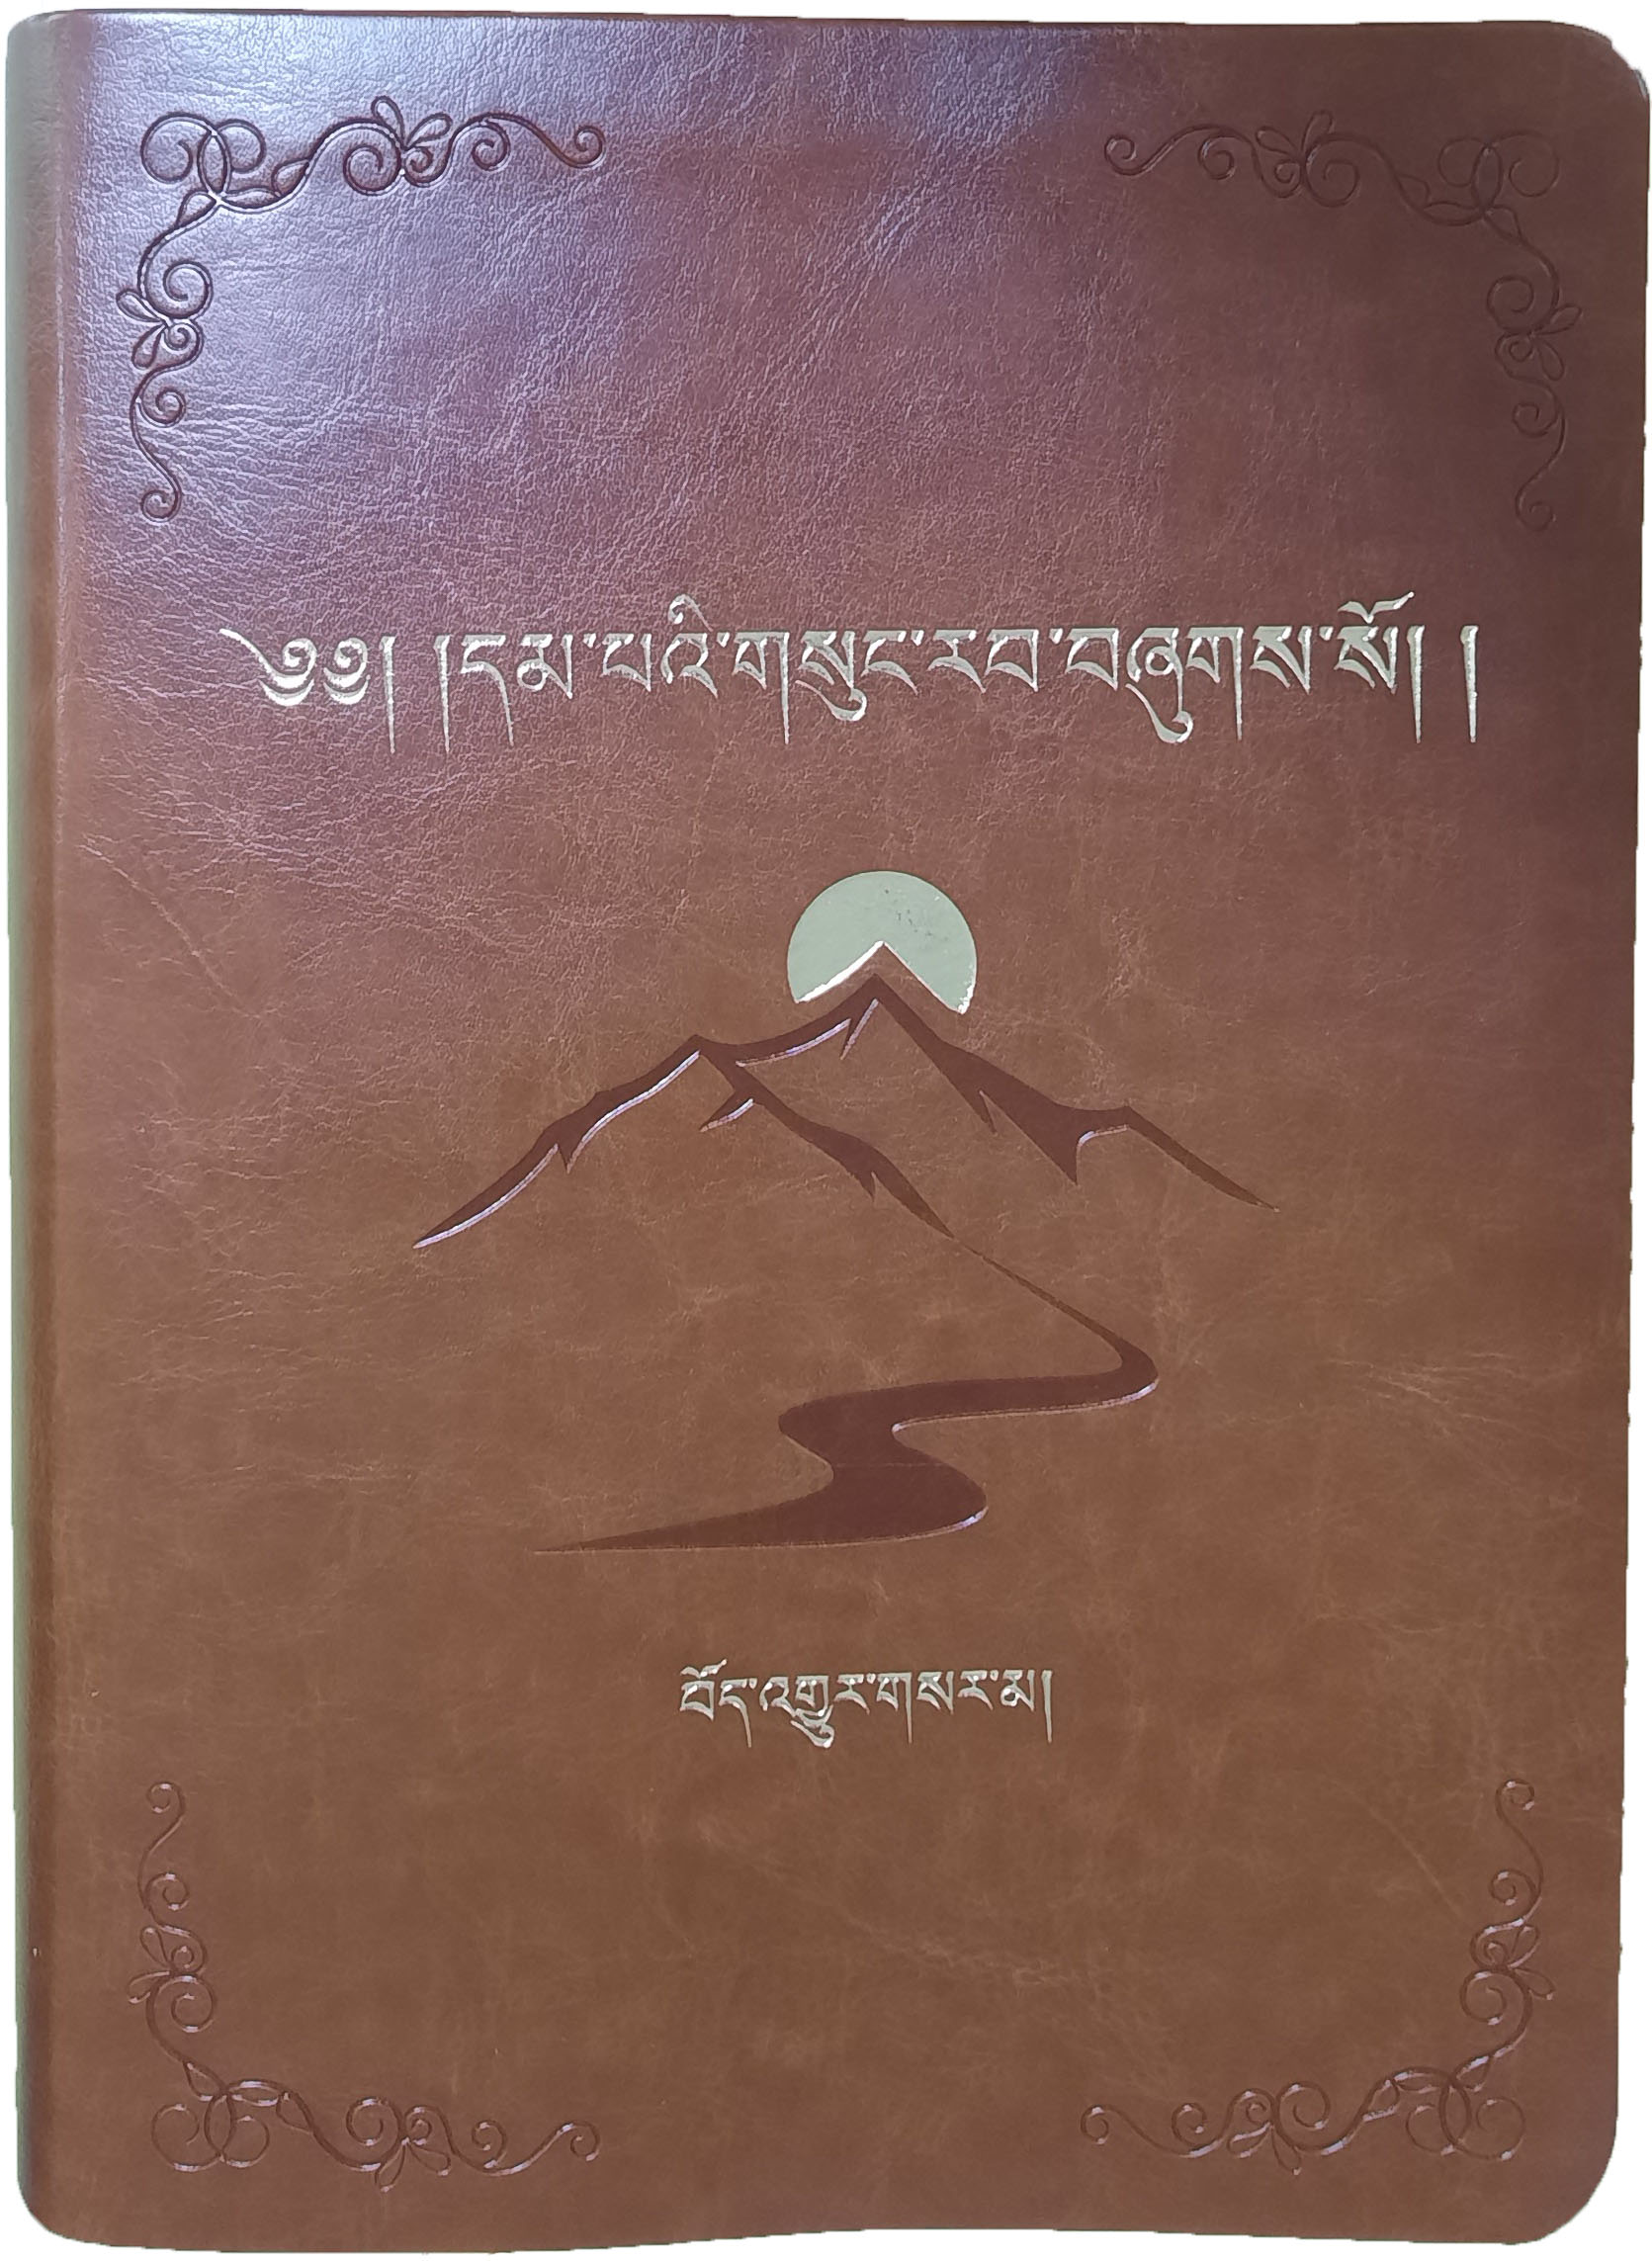 New Tibetan Bible